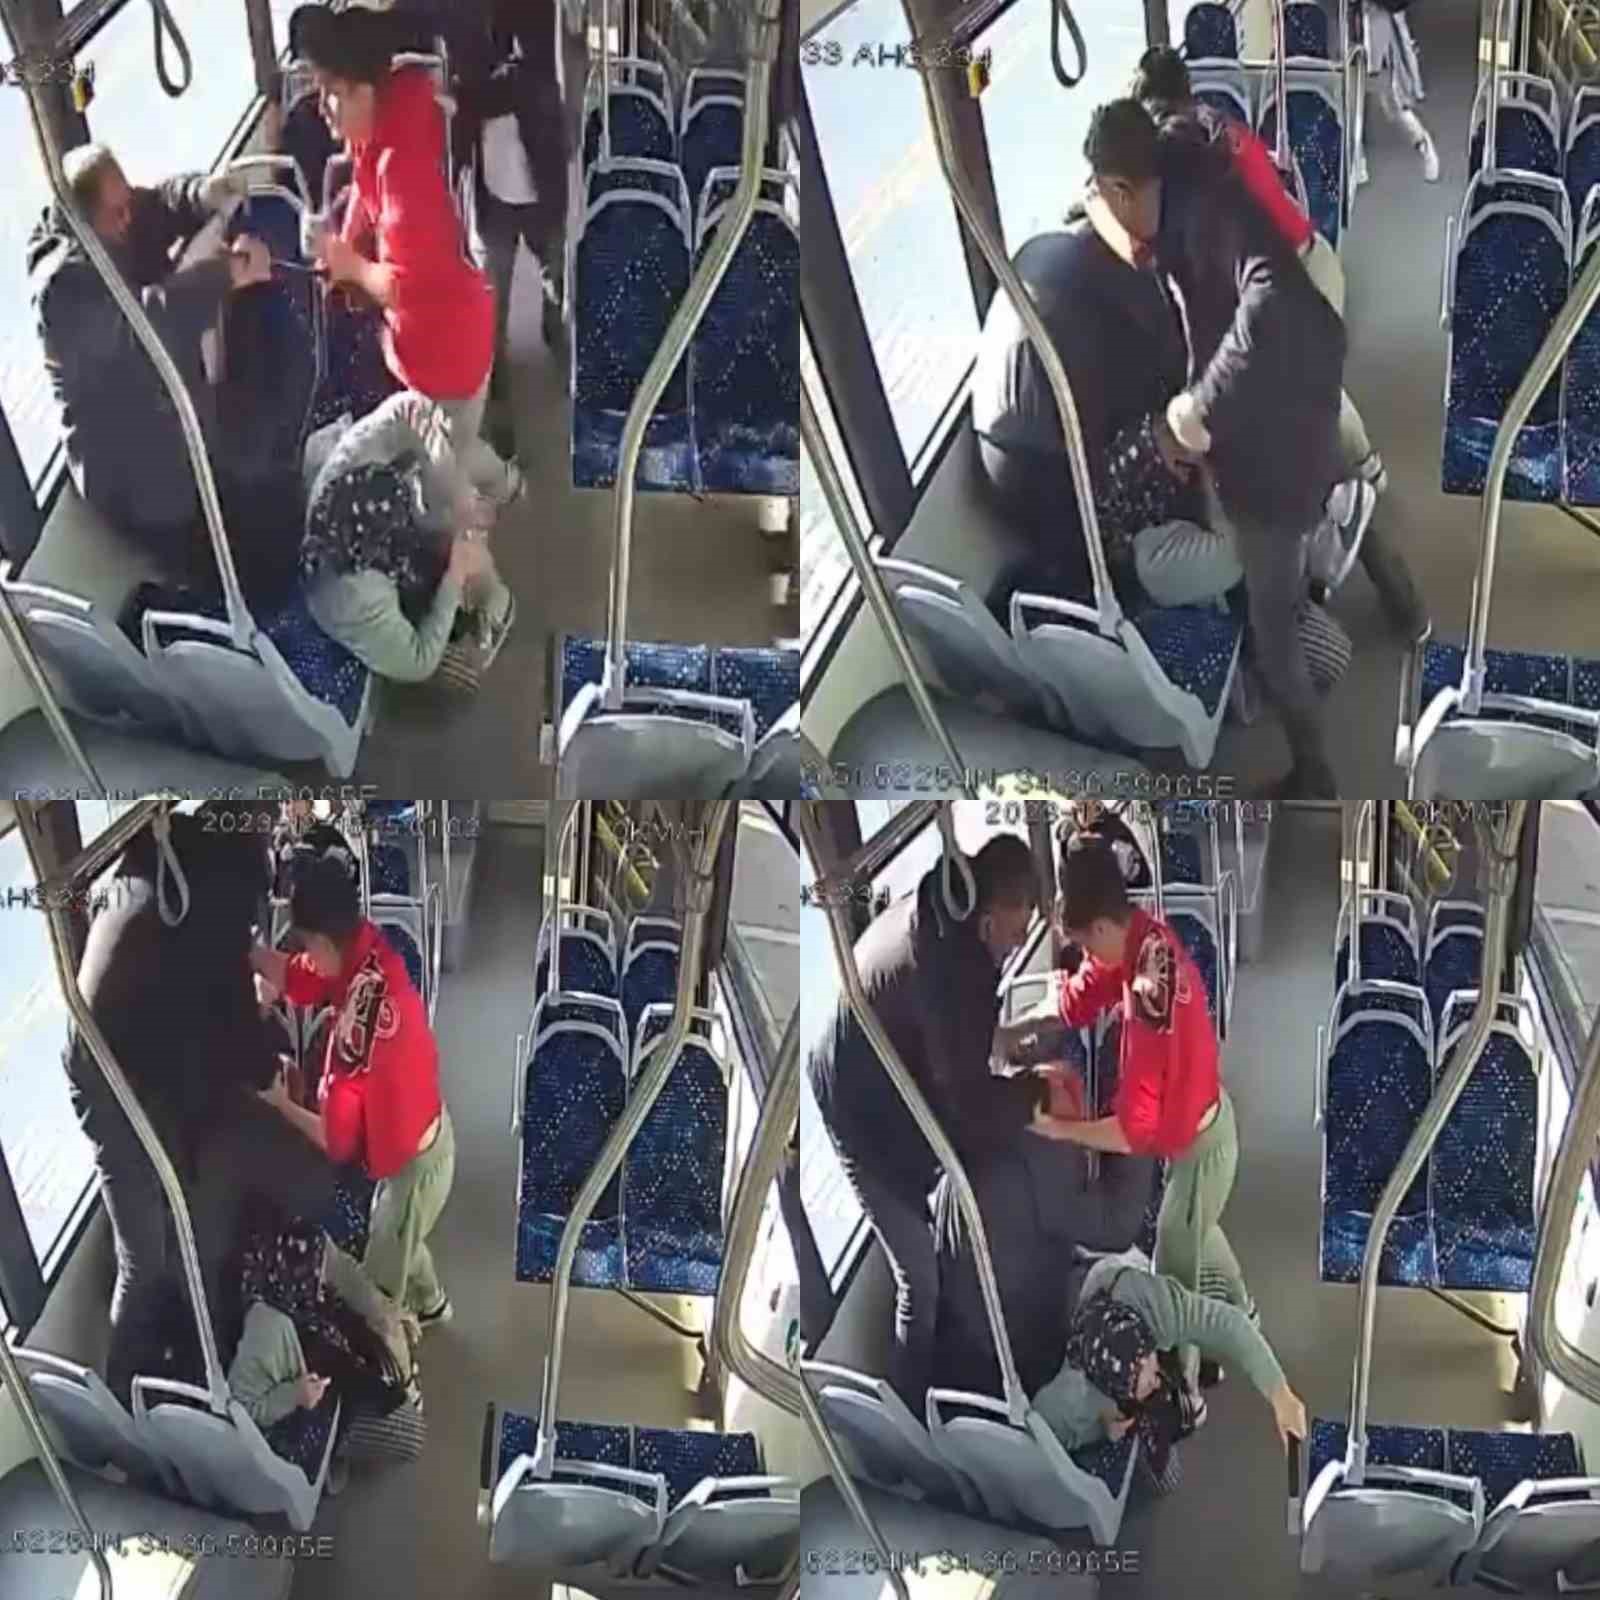 Okul müdürü ve oğlunun, otobüste yaşlı çifti darp etme görüntüleri ortaya çıktı
